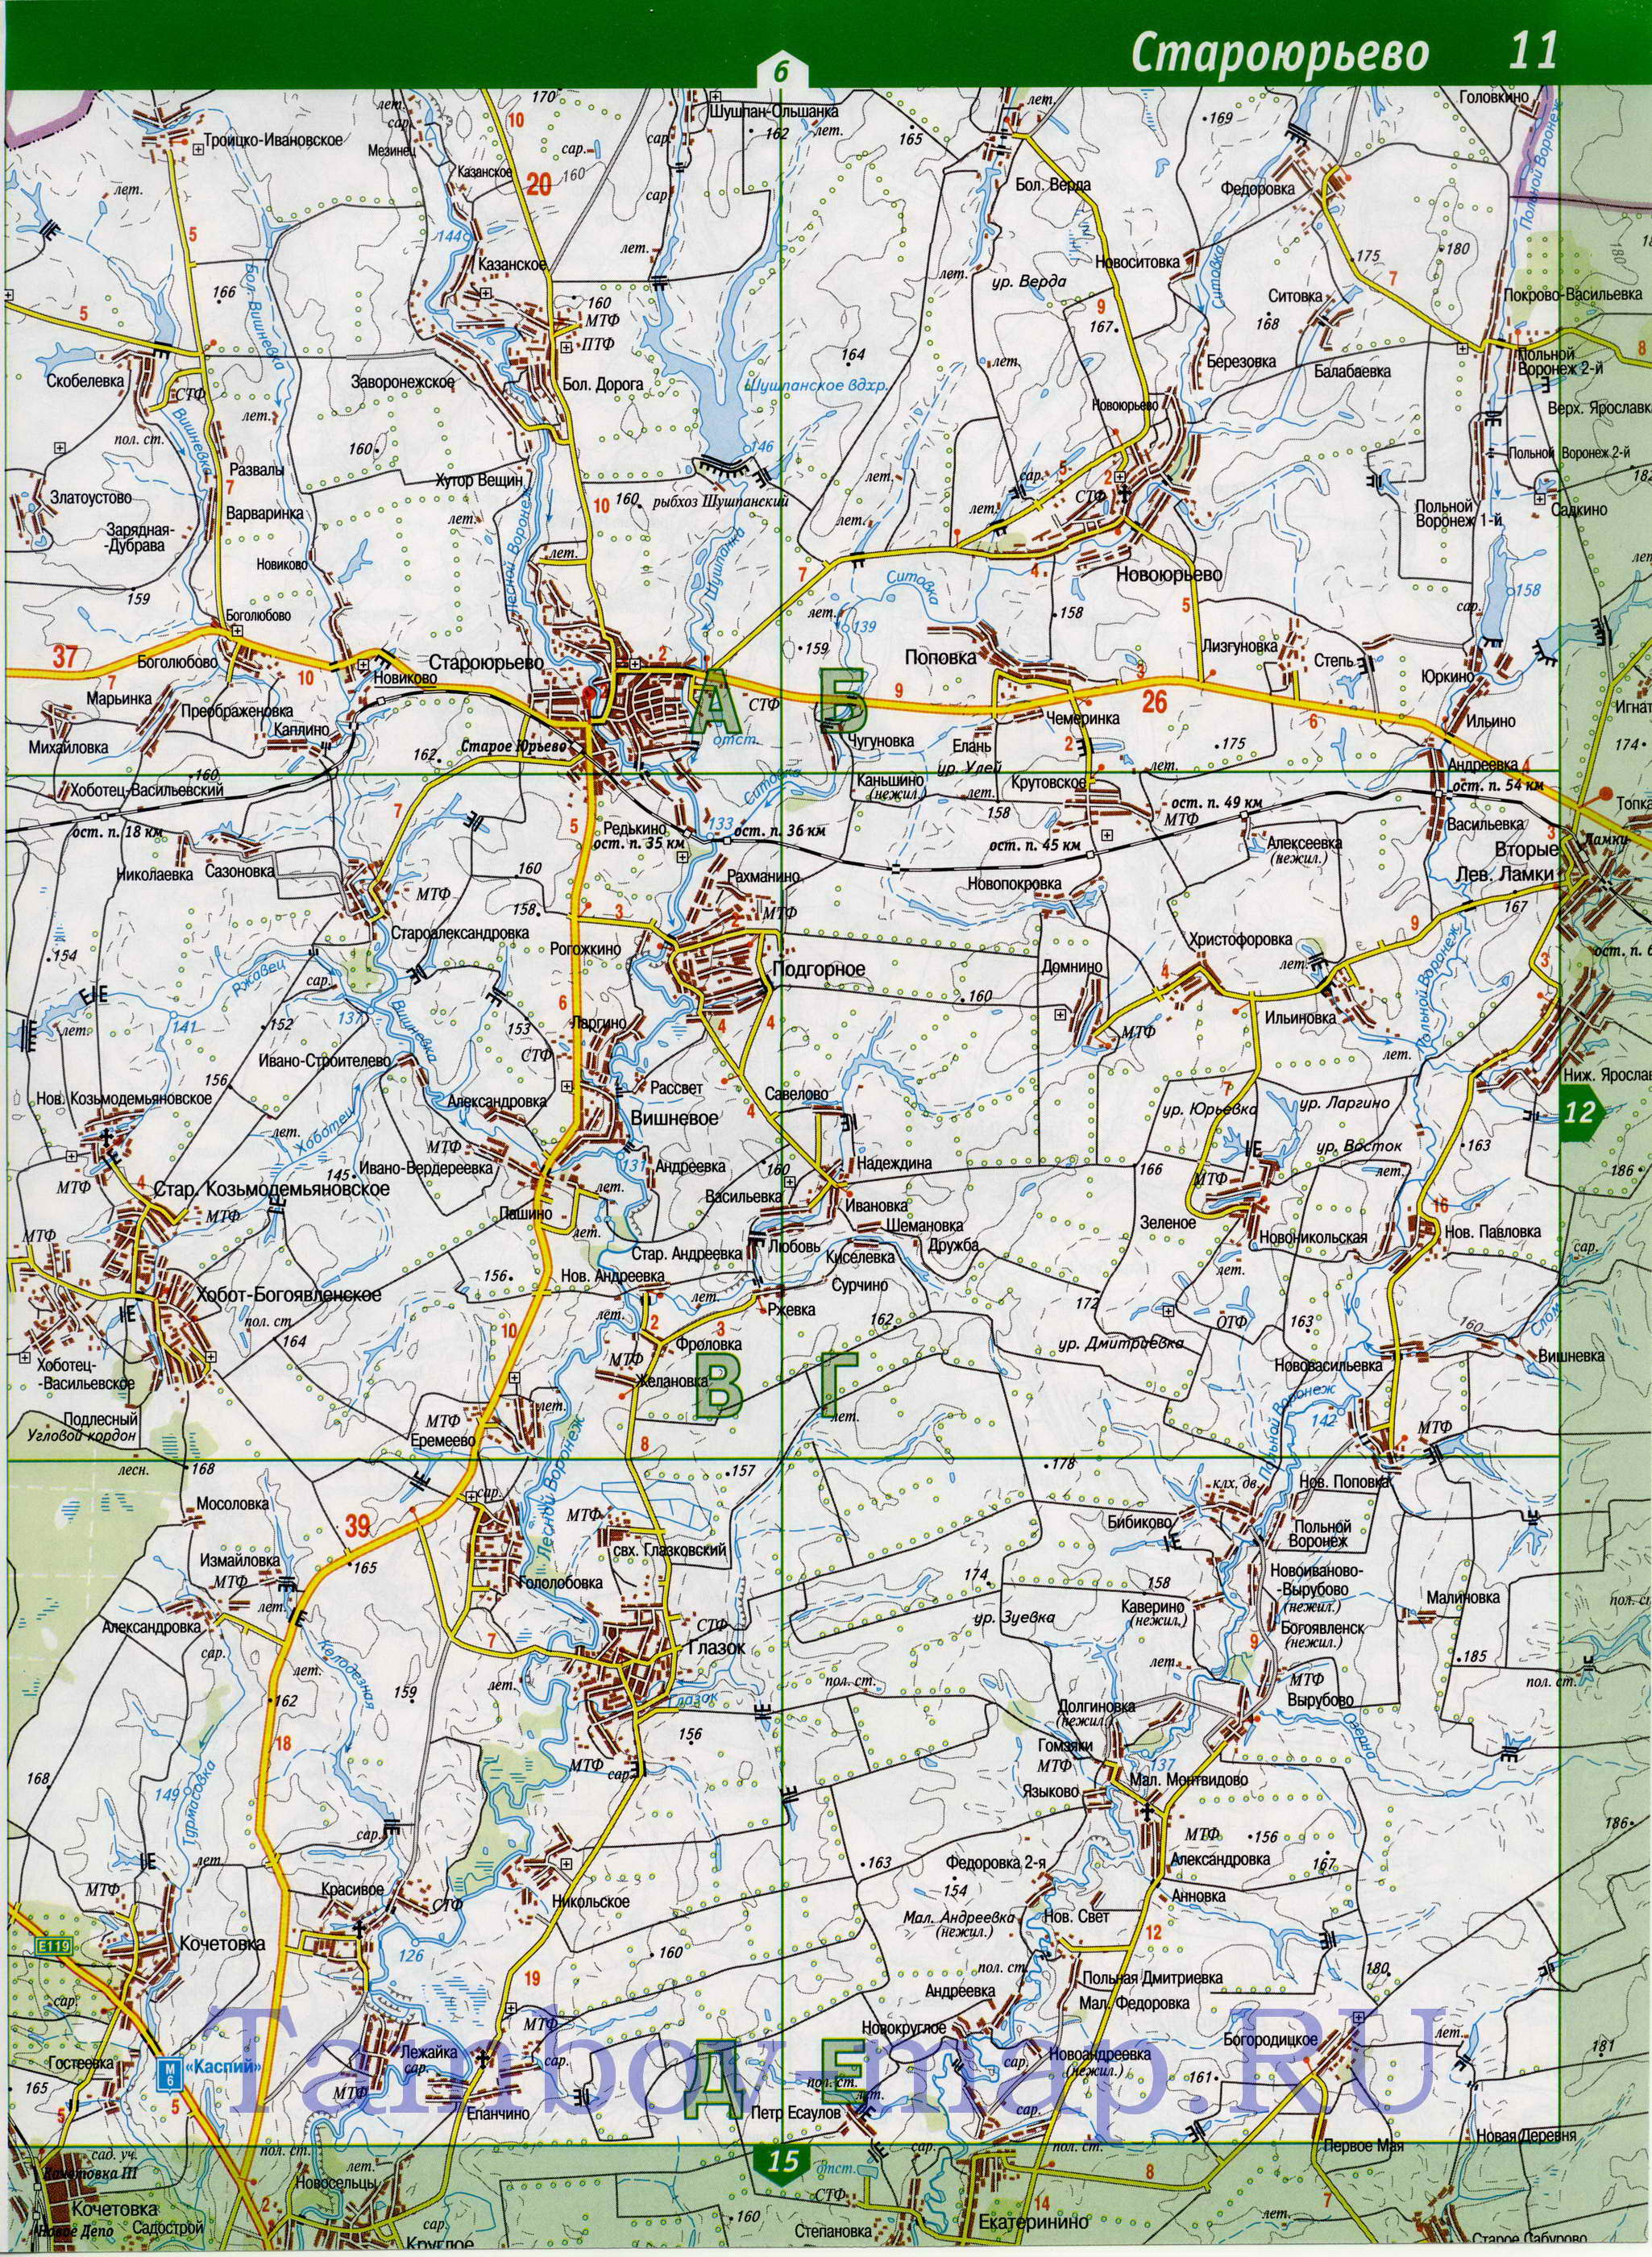 Карта Тамбовской области топографическая. Тамбовская область - подробная топографическая карта масштаба 1см:2км, B0 - 